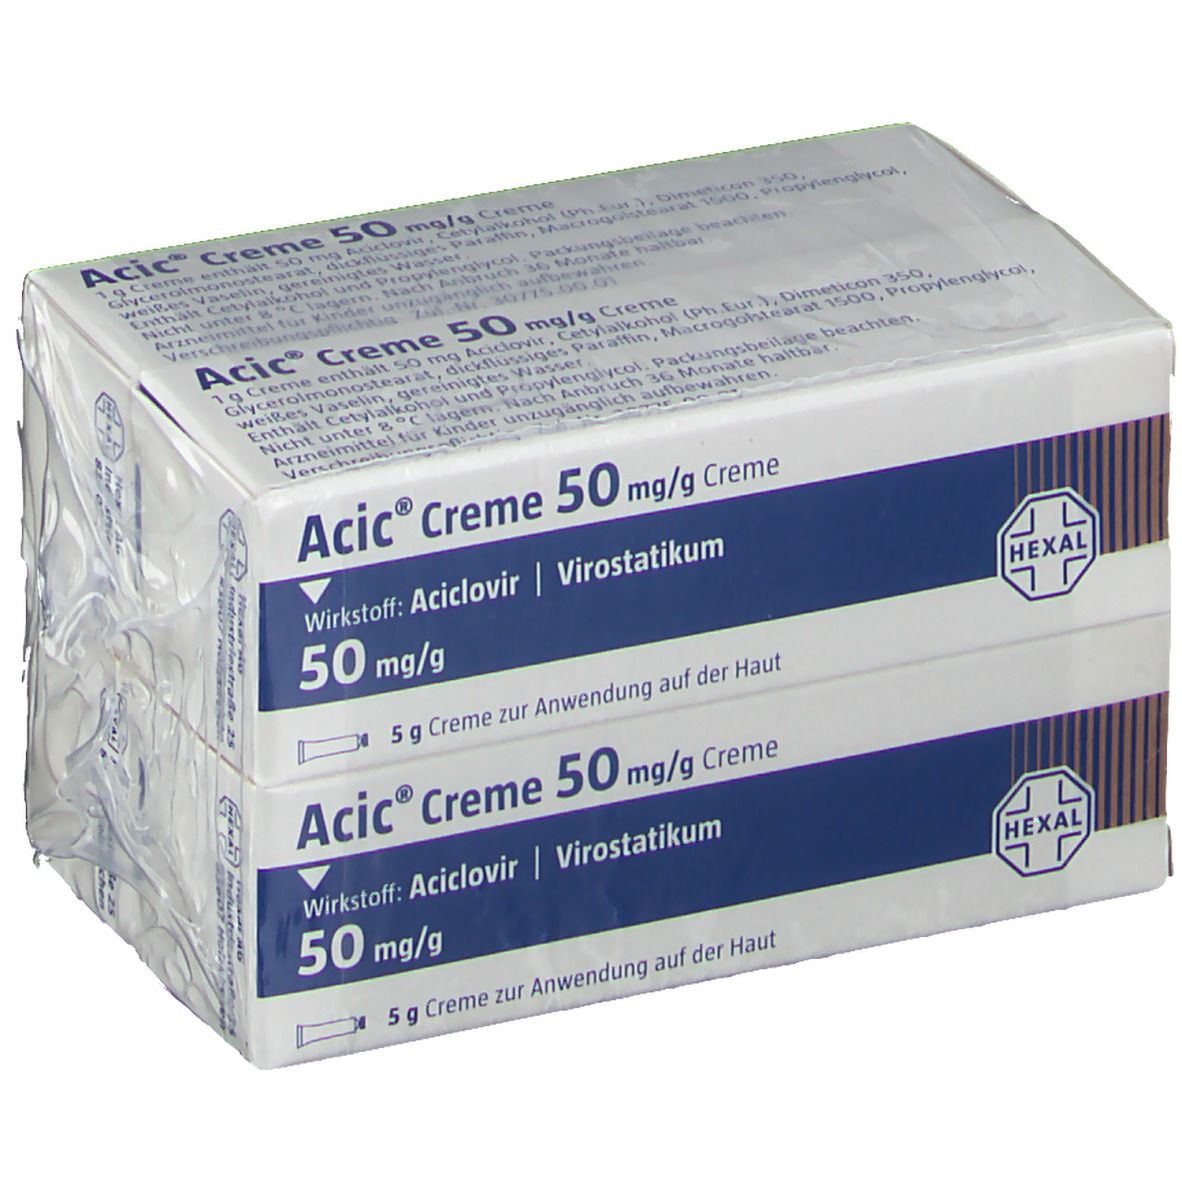 Acic® Creme 50 mg/g